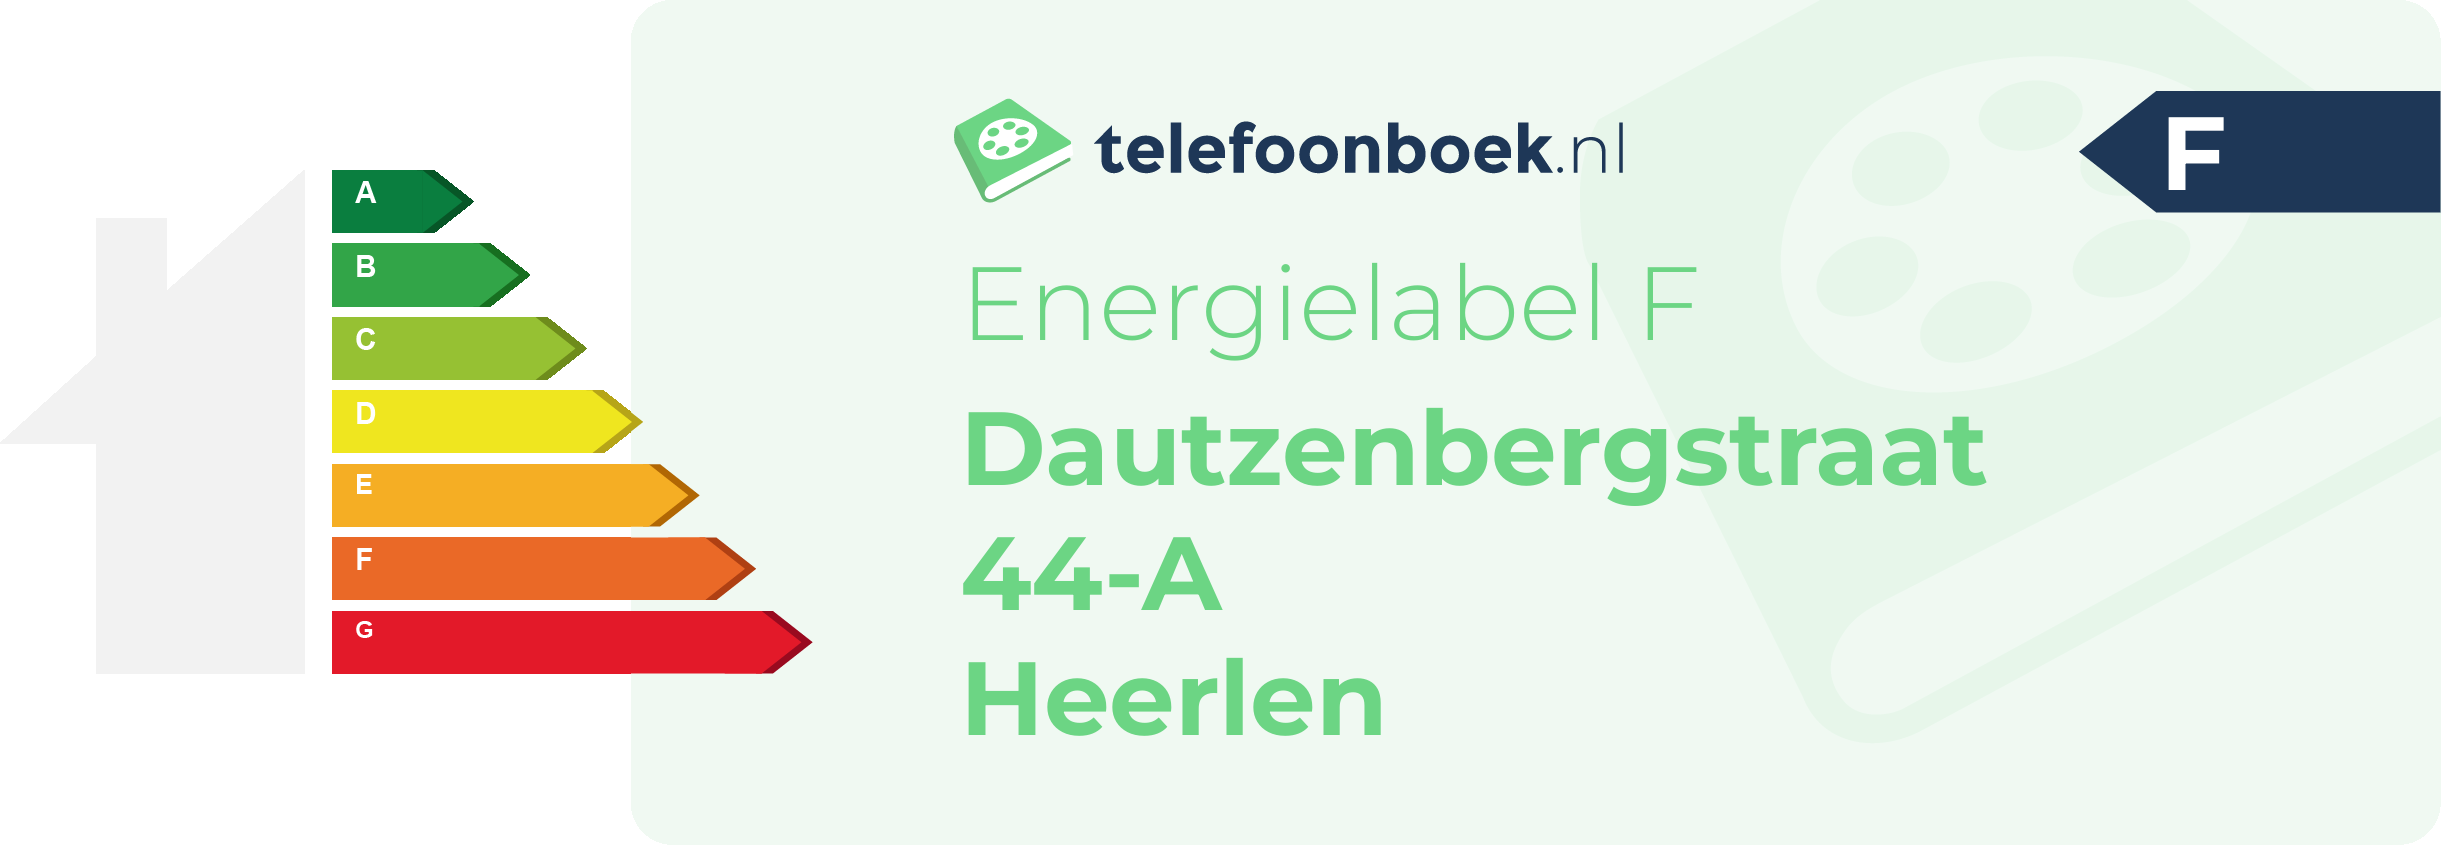 Energielabel Dautzenbergstraat 44-A Heerlen